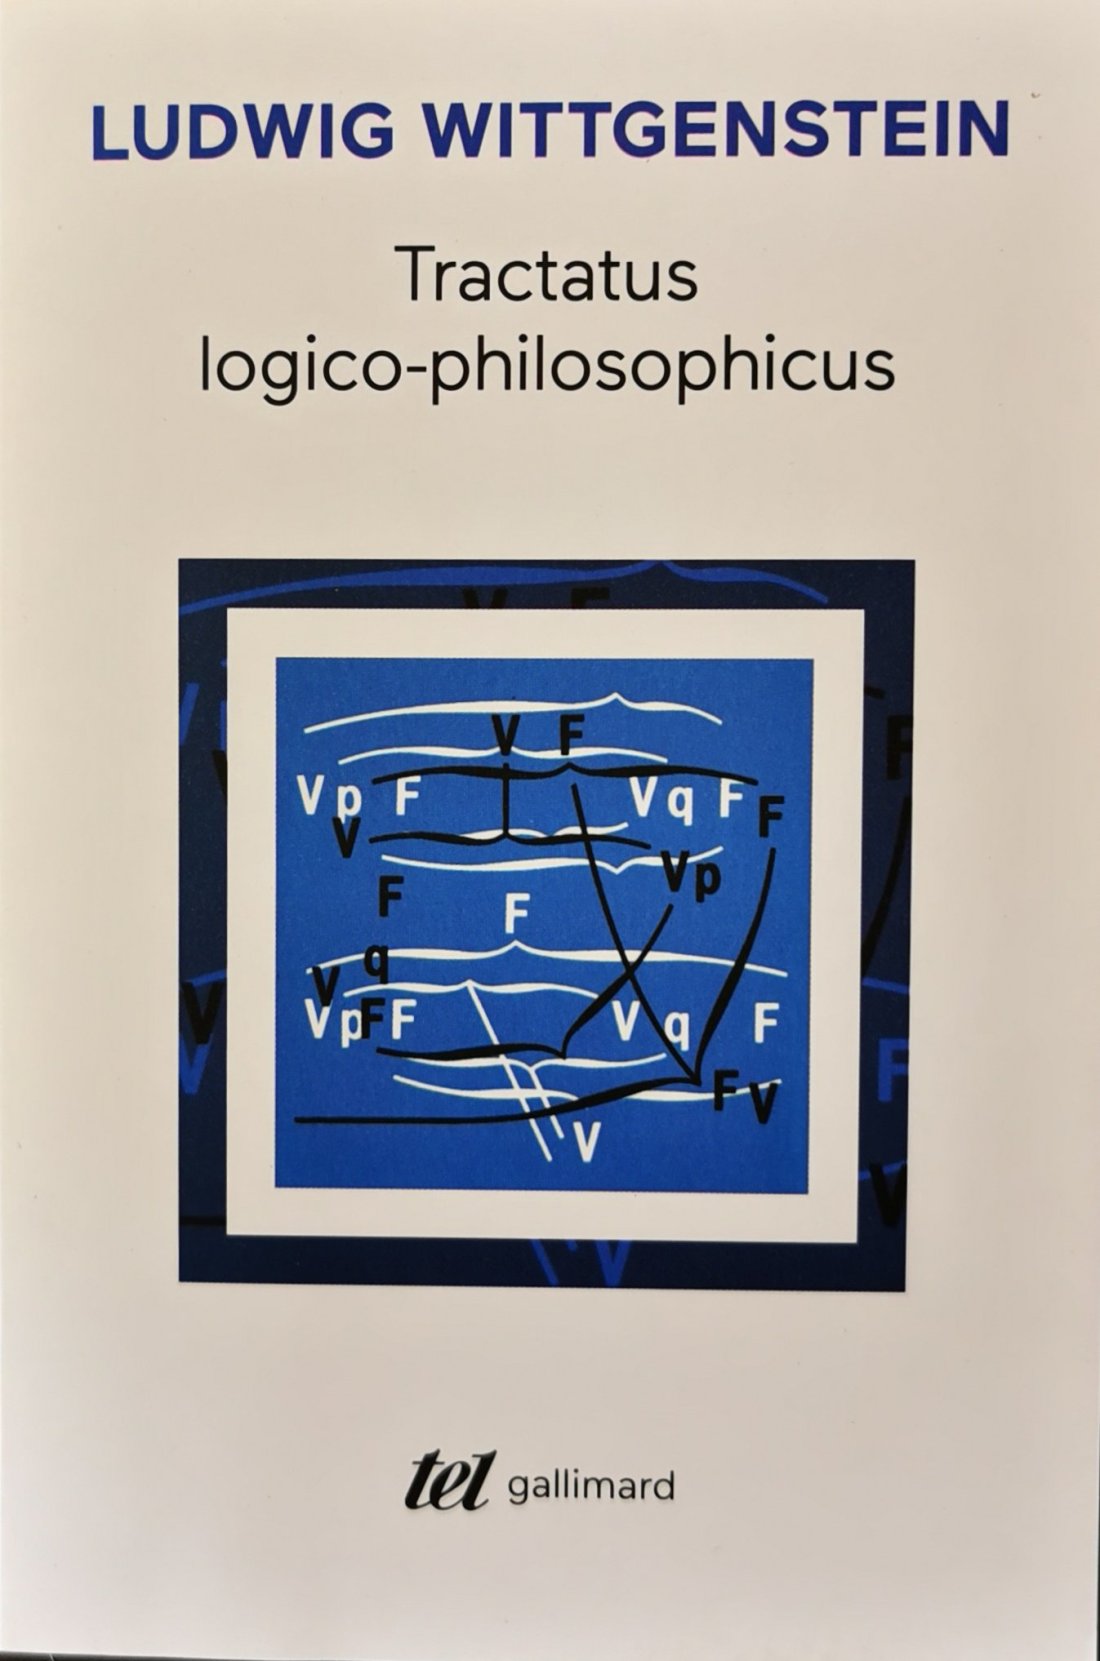 Tractatus logico-philosophicus Wittgenstein